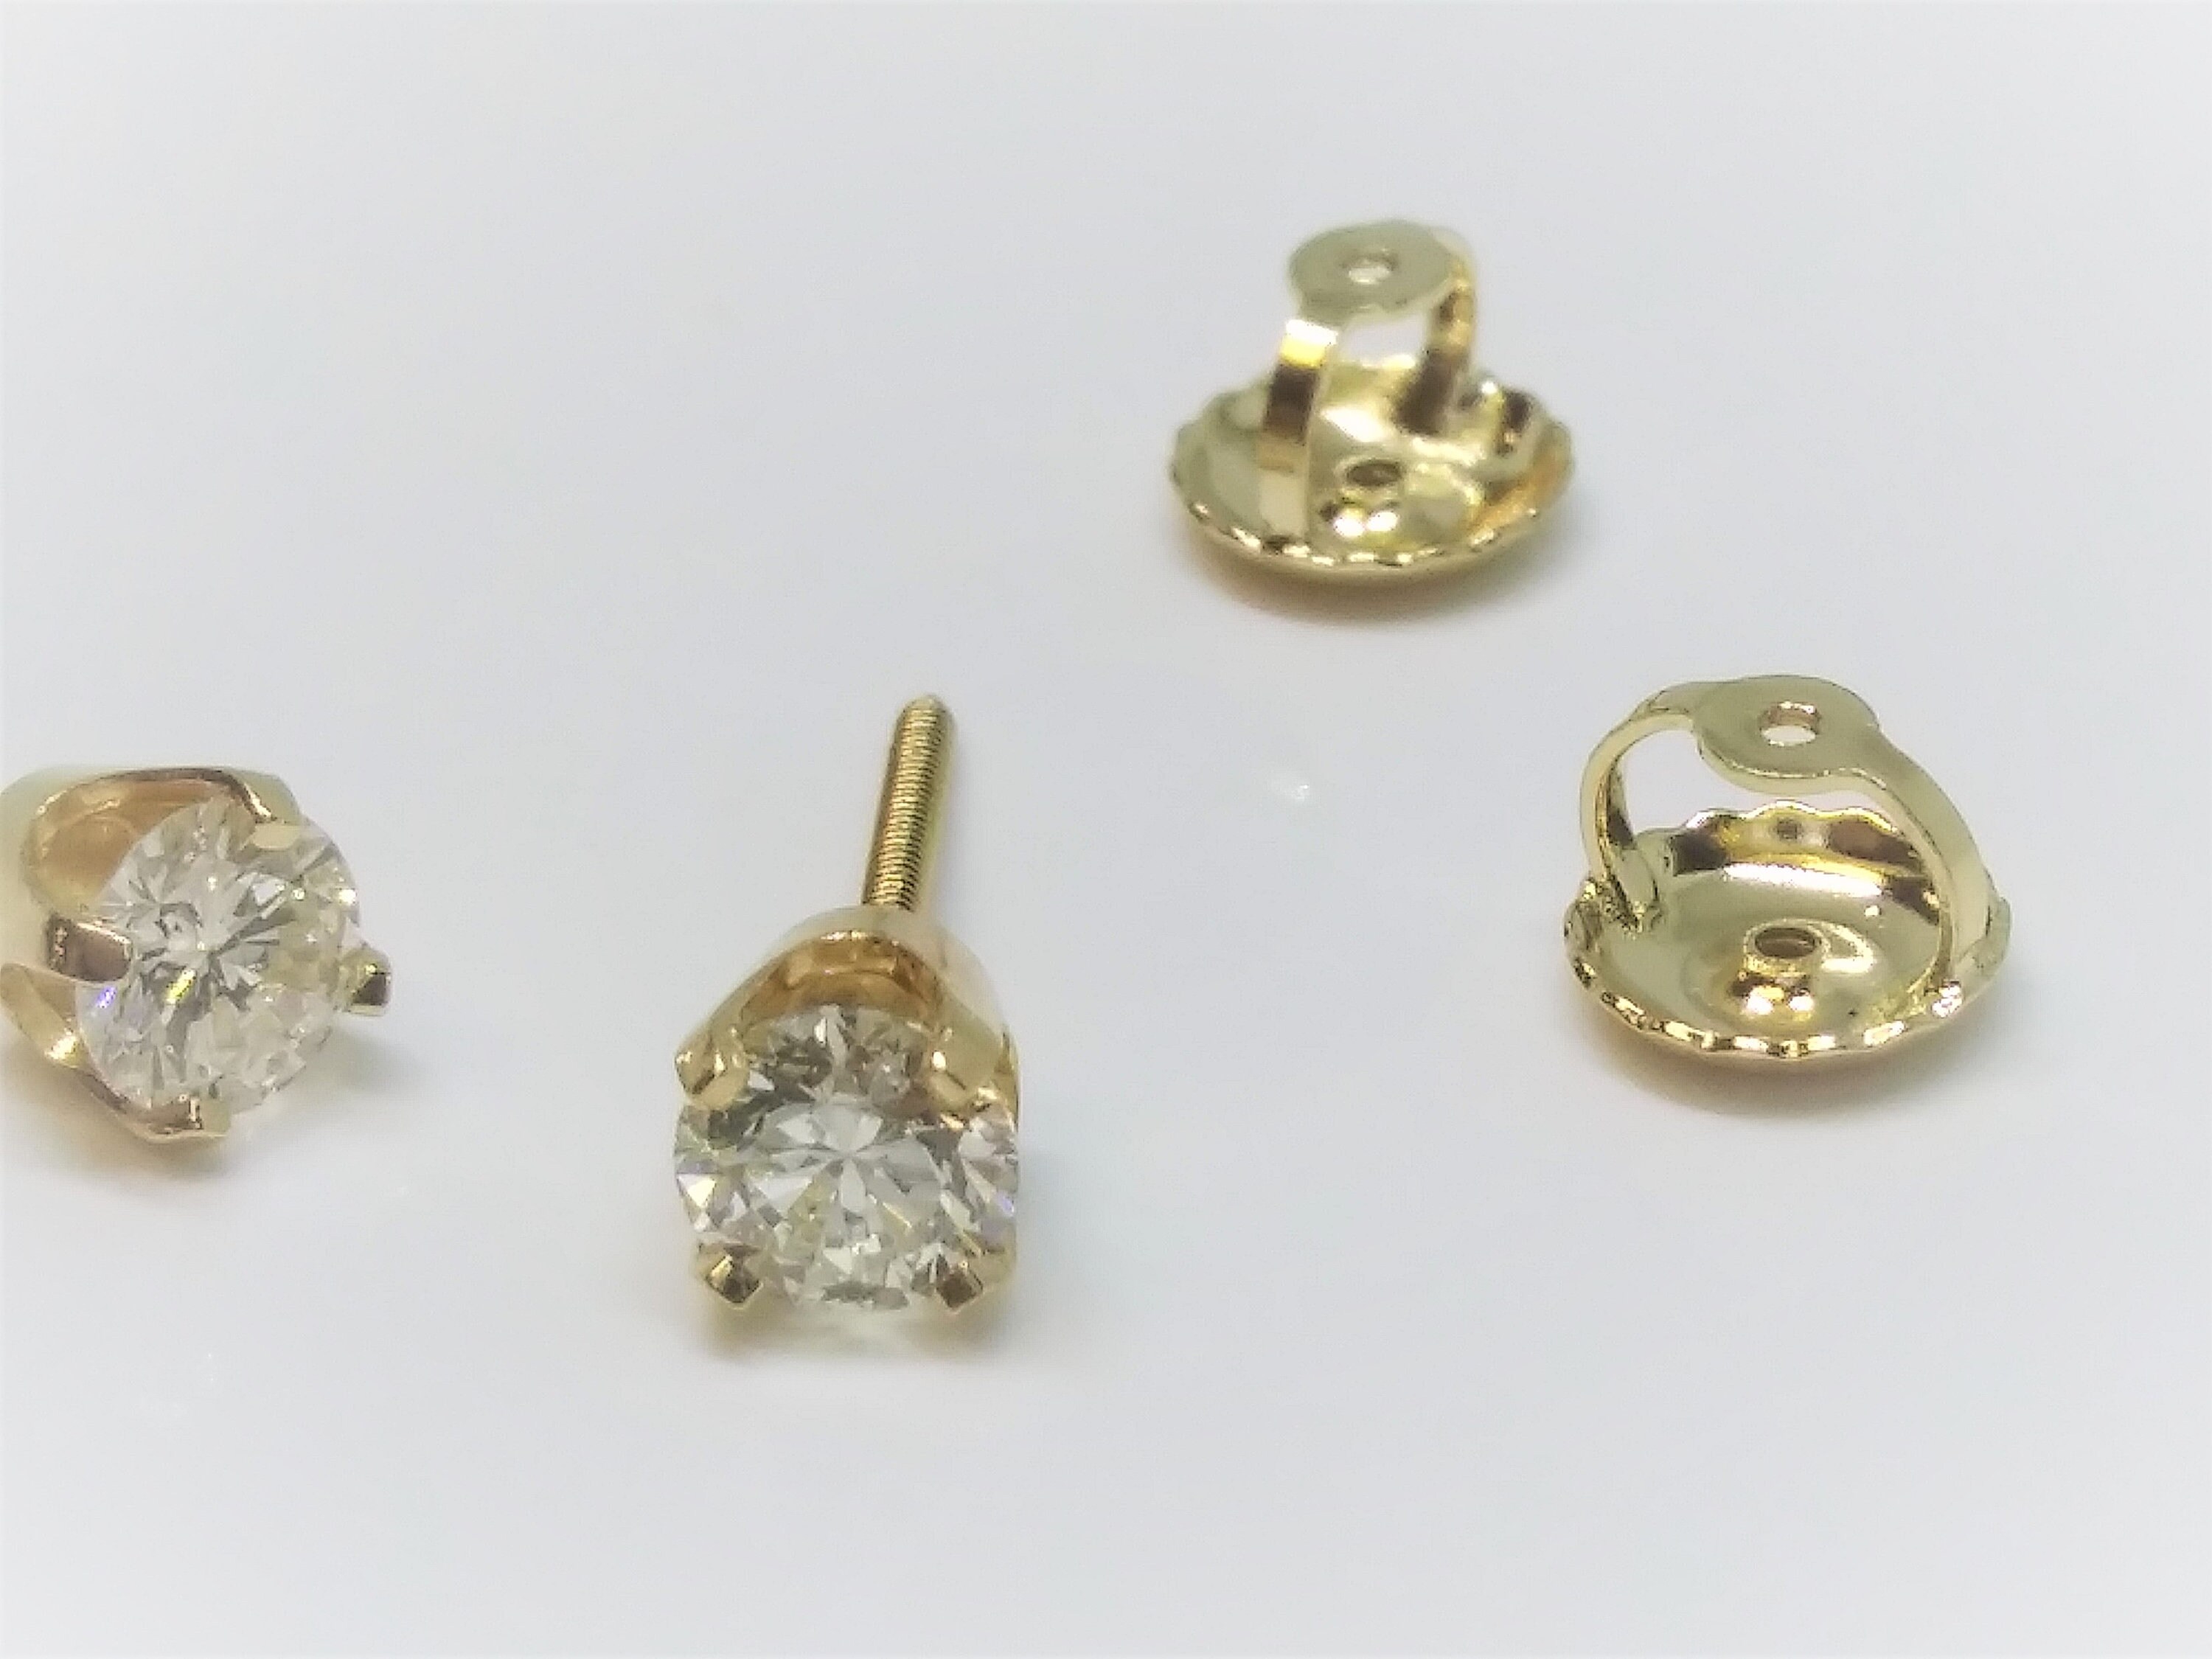 Screw Back for Standard Earrings in 14K Yellow Gold – A Karat Company